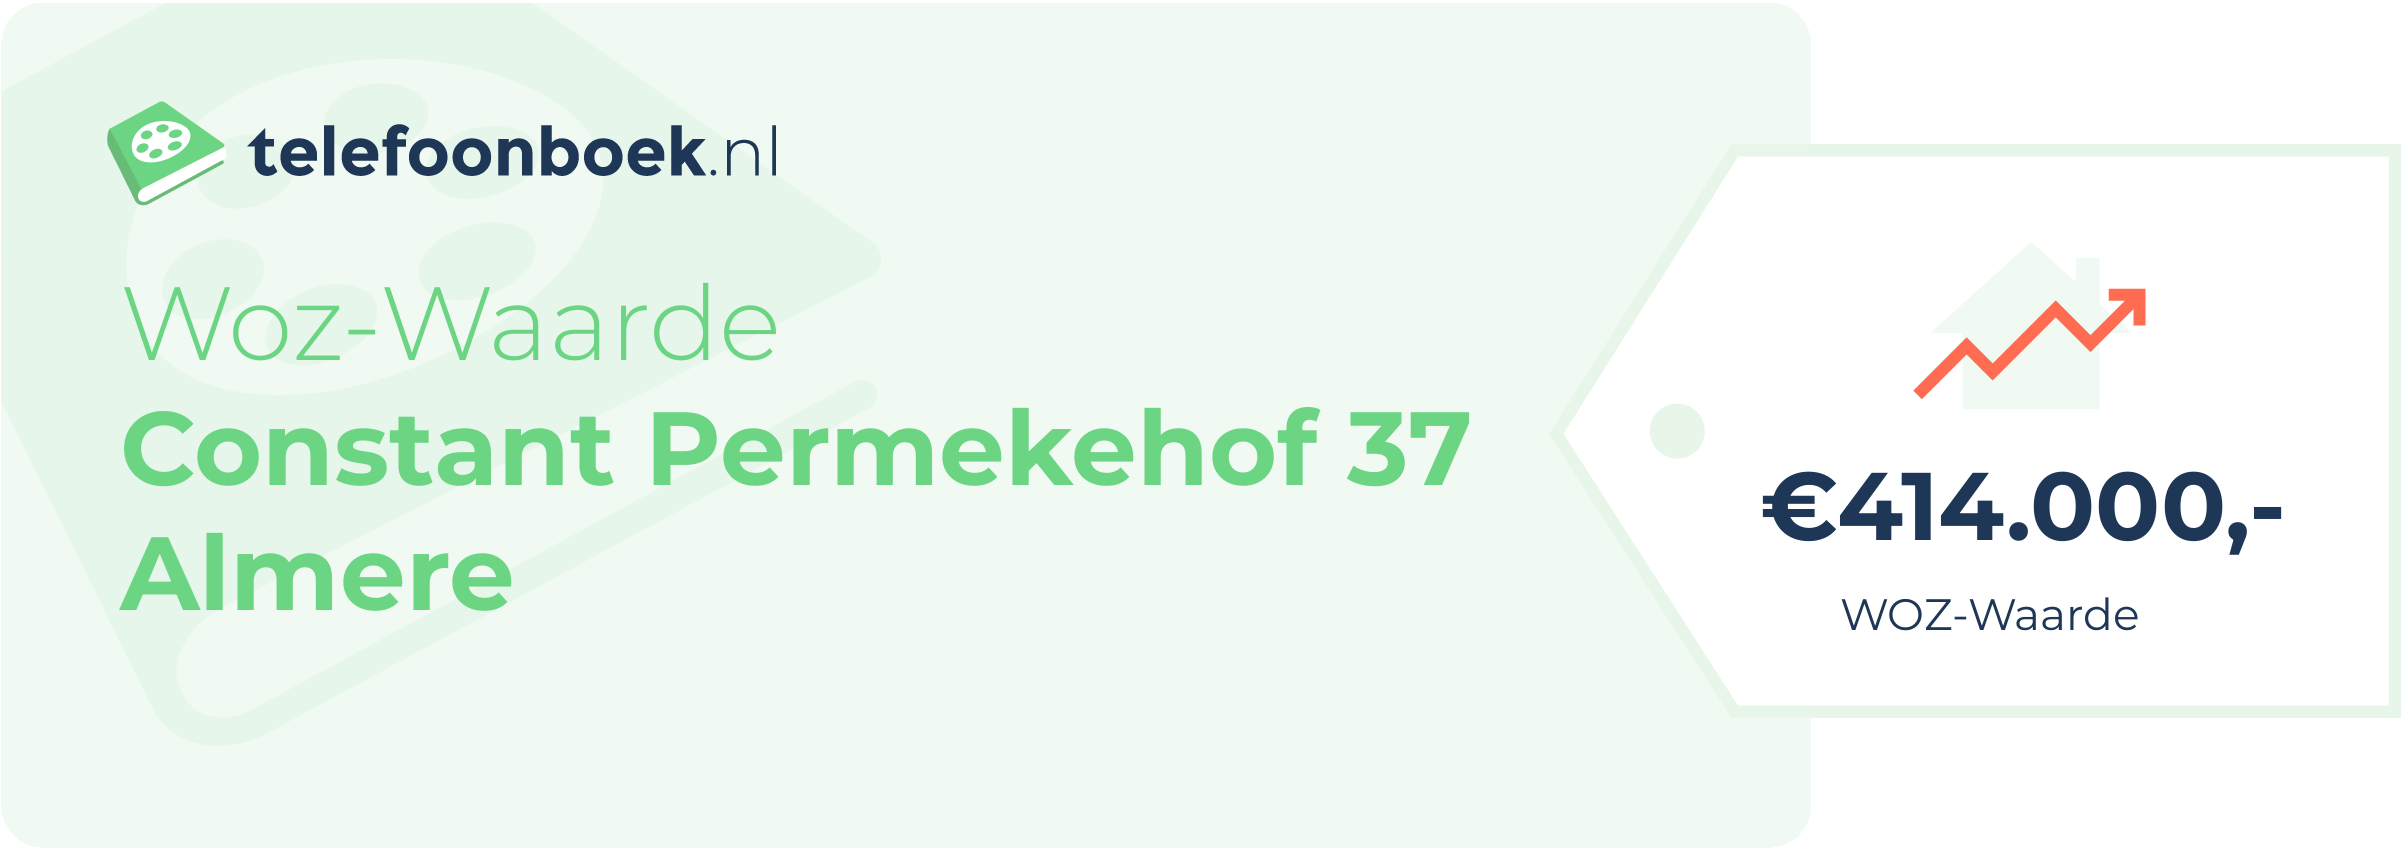 WOZ-waarde Constant Permekehof 37 Almere